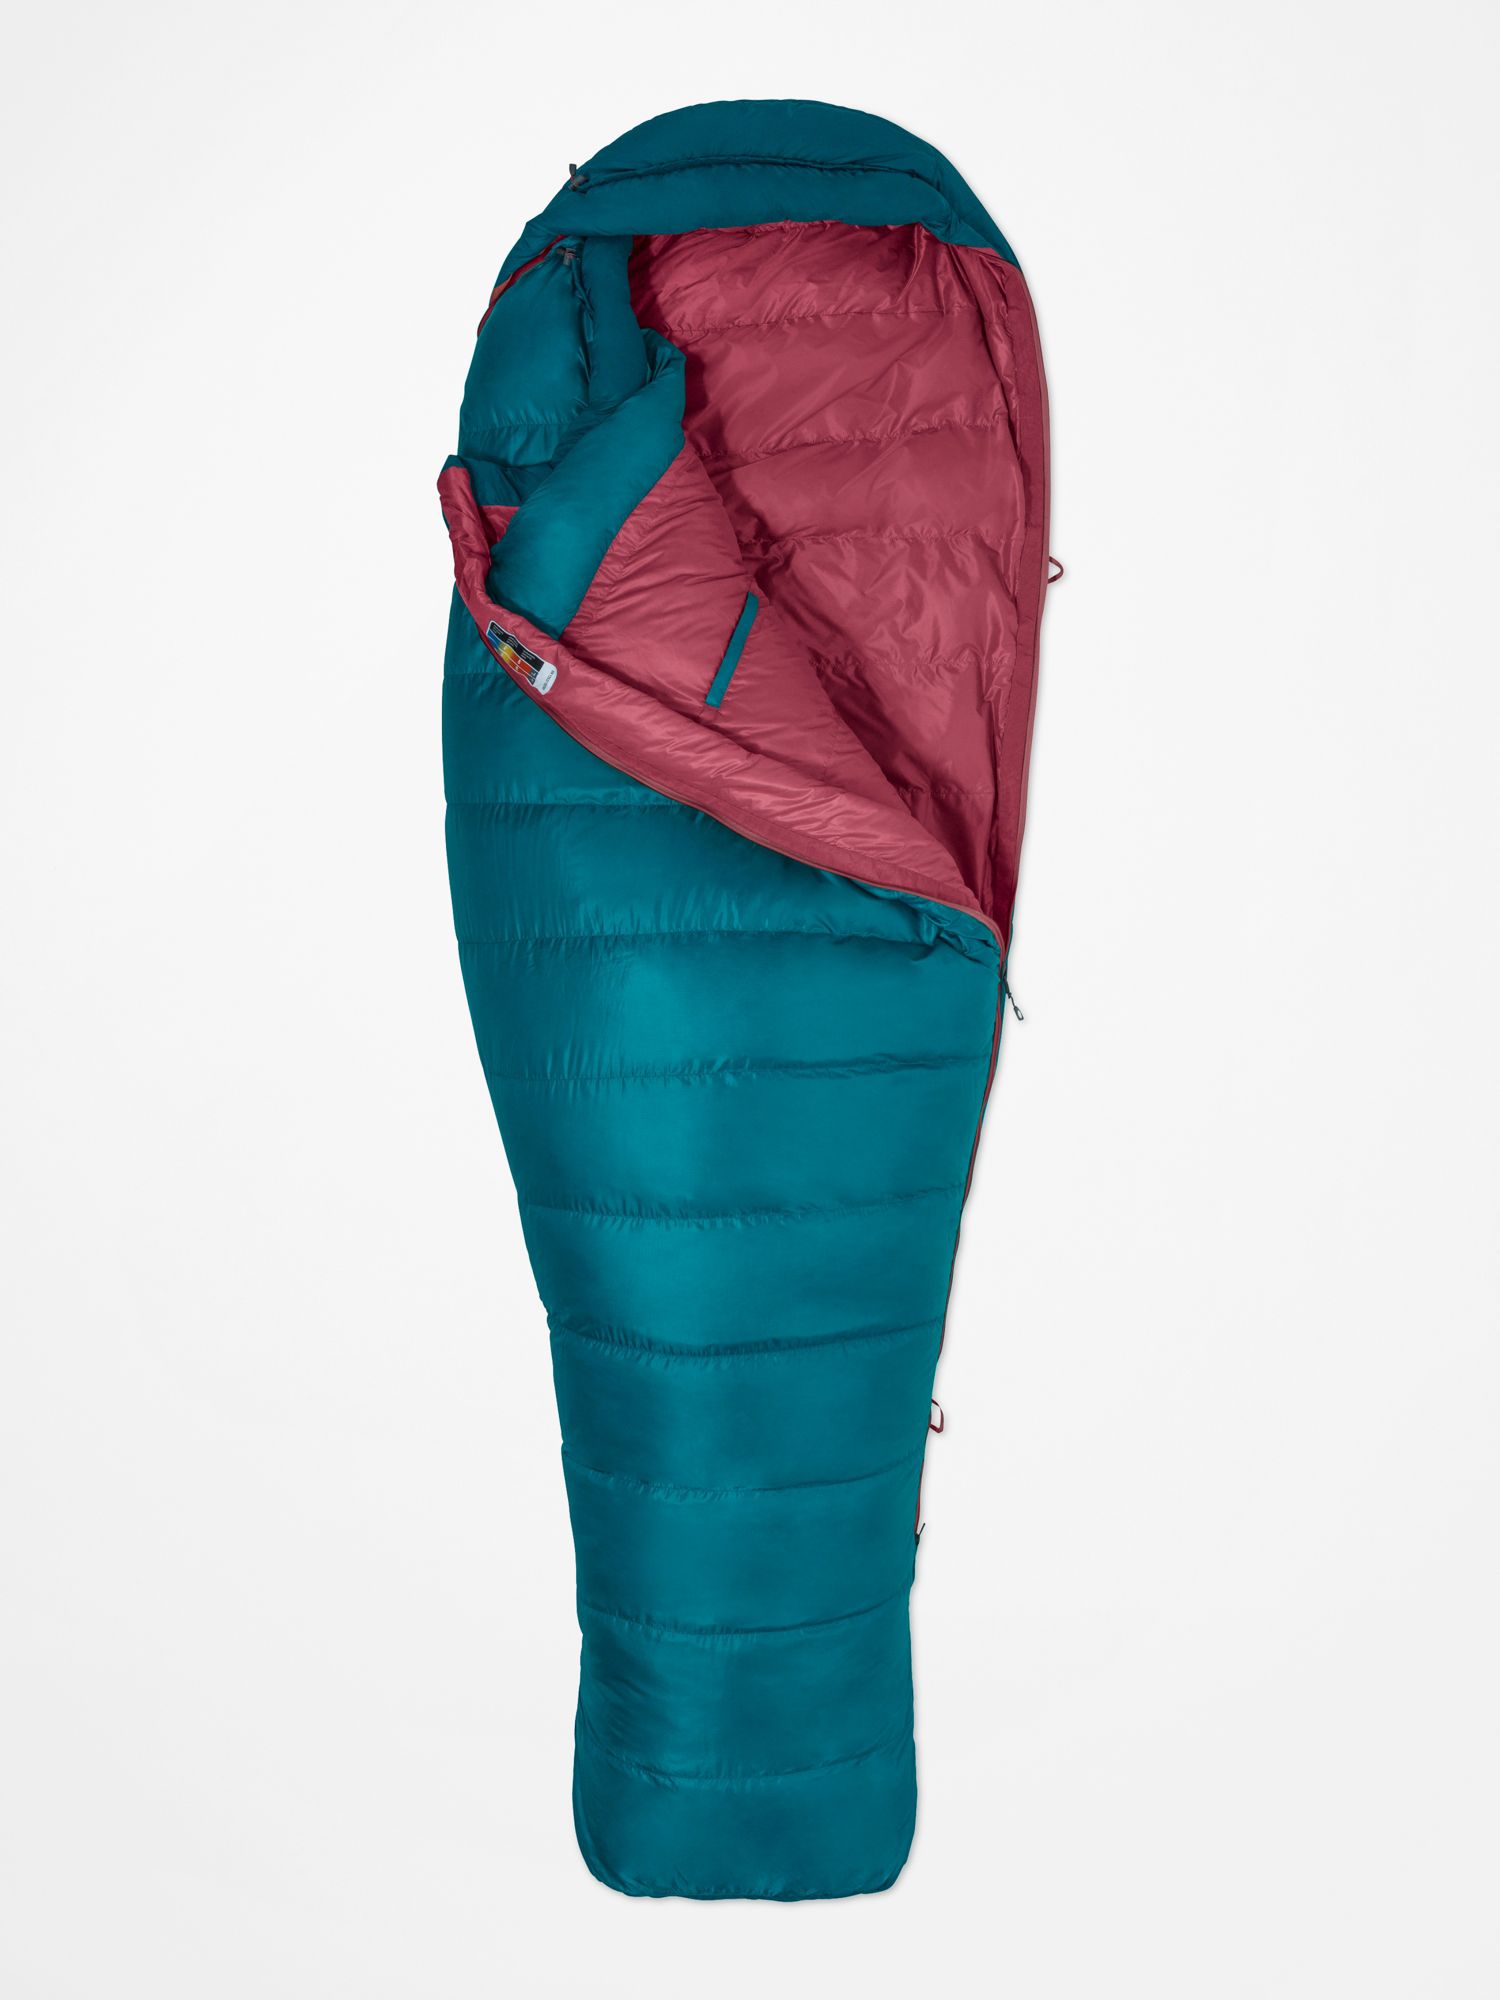 Women's Teton 15° Sleeping Bag